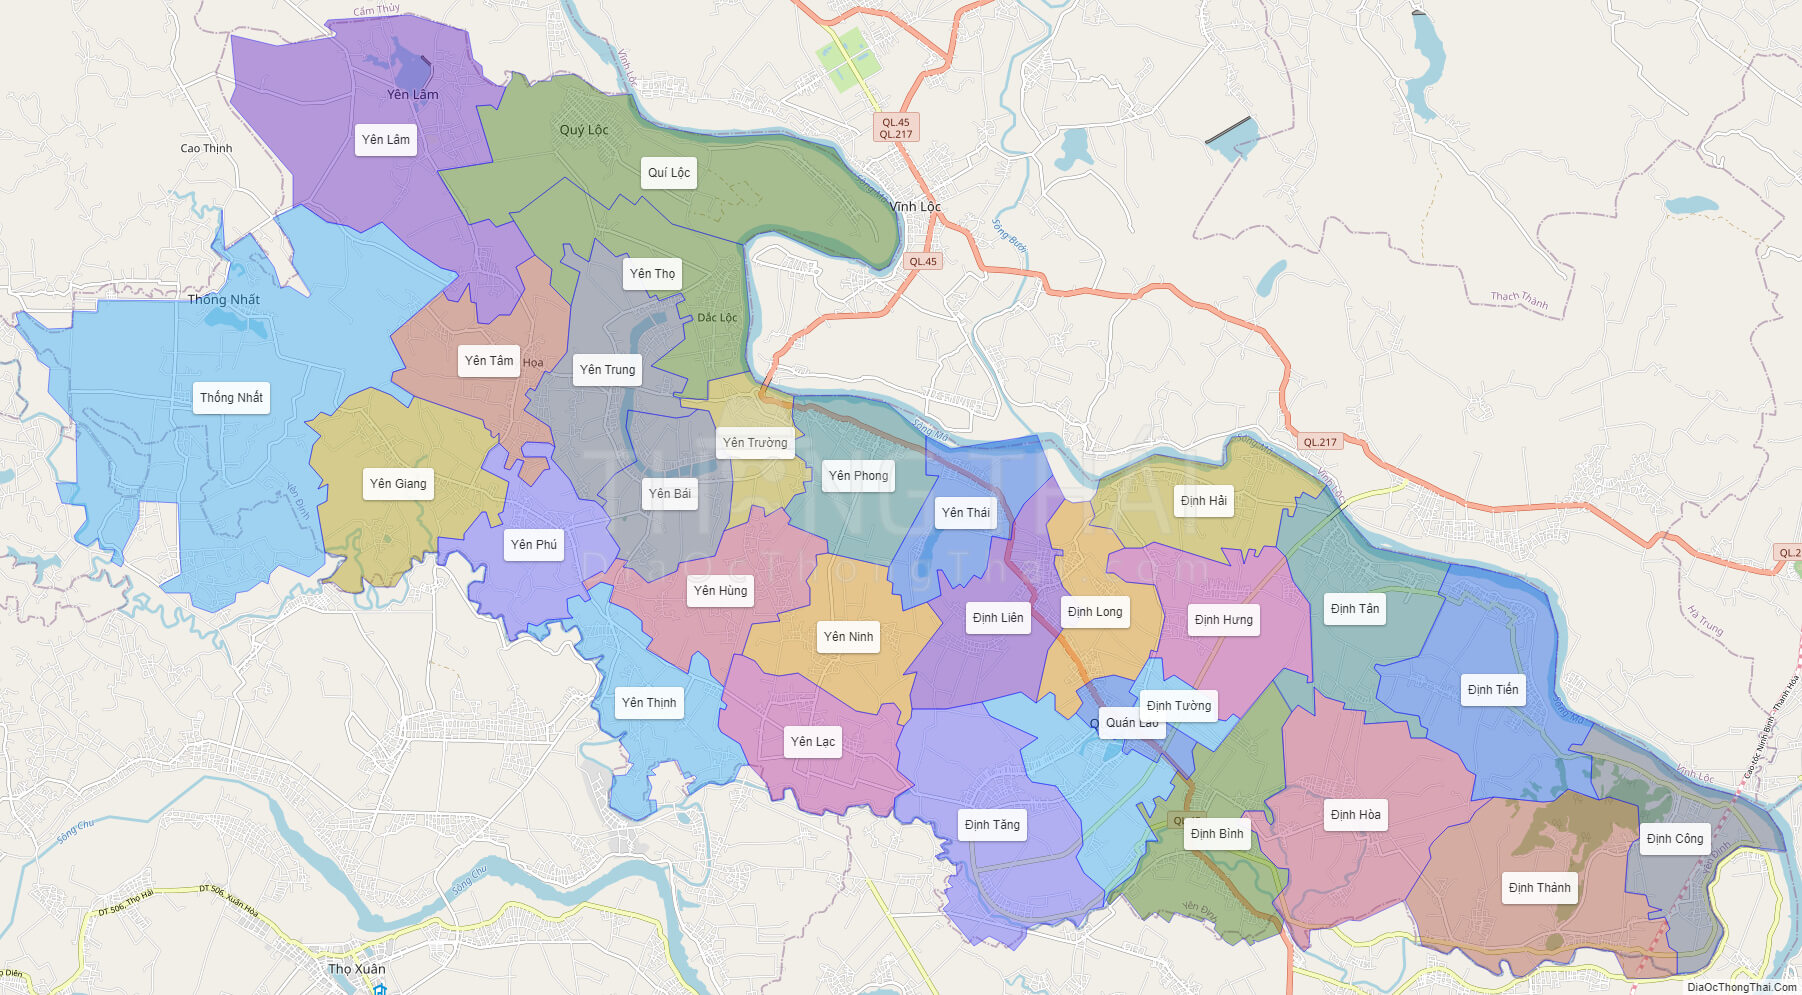 Bản đồ huyện Yên Định Thanh Hóa năm 2024 sẽ giúp bạn điều hướng tìm kiếm những địa điểm thú vị, khám phá những lễ hội đặc trưng cho vùng Yên Định. Đắm chìm cùng con người địa phương trong những giá trị văn hóa, chính trị, kinh tế của vùng miệt vườn.